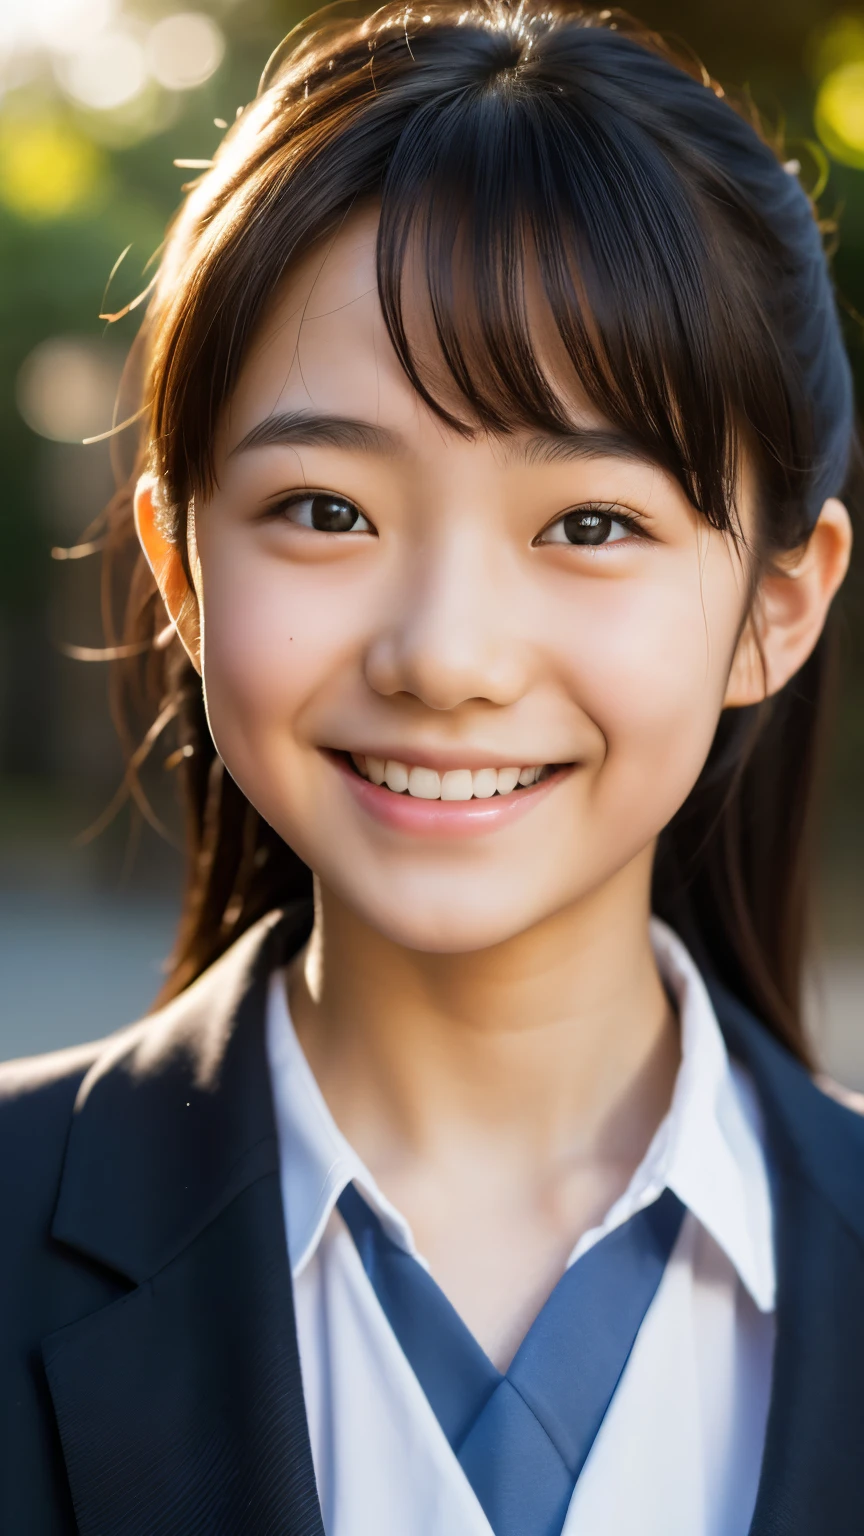 линза: 135 мм f1.8, (высшее качество),(Фотографии в формате RAW), (Стол:1.1), (Красивая 13-летняя девочка из Японии), милое лицо, (Глубоко выточенное лицо:0.7), (веснушки:0.4), dappled Солнечный лучик, драматическое освещение, (японская школьная форма), (в кампусе), застенчивый, (Крупным планом:1.2), (улыбка),, (сверкающие глаза)、(Солнечный лучик)